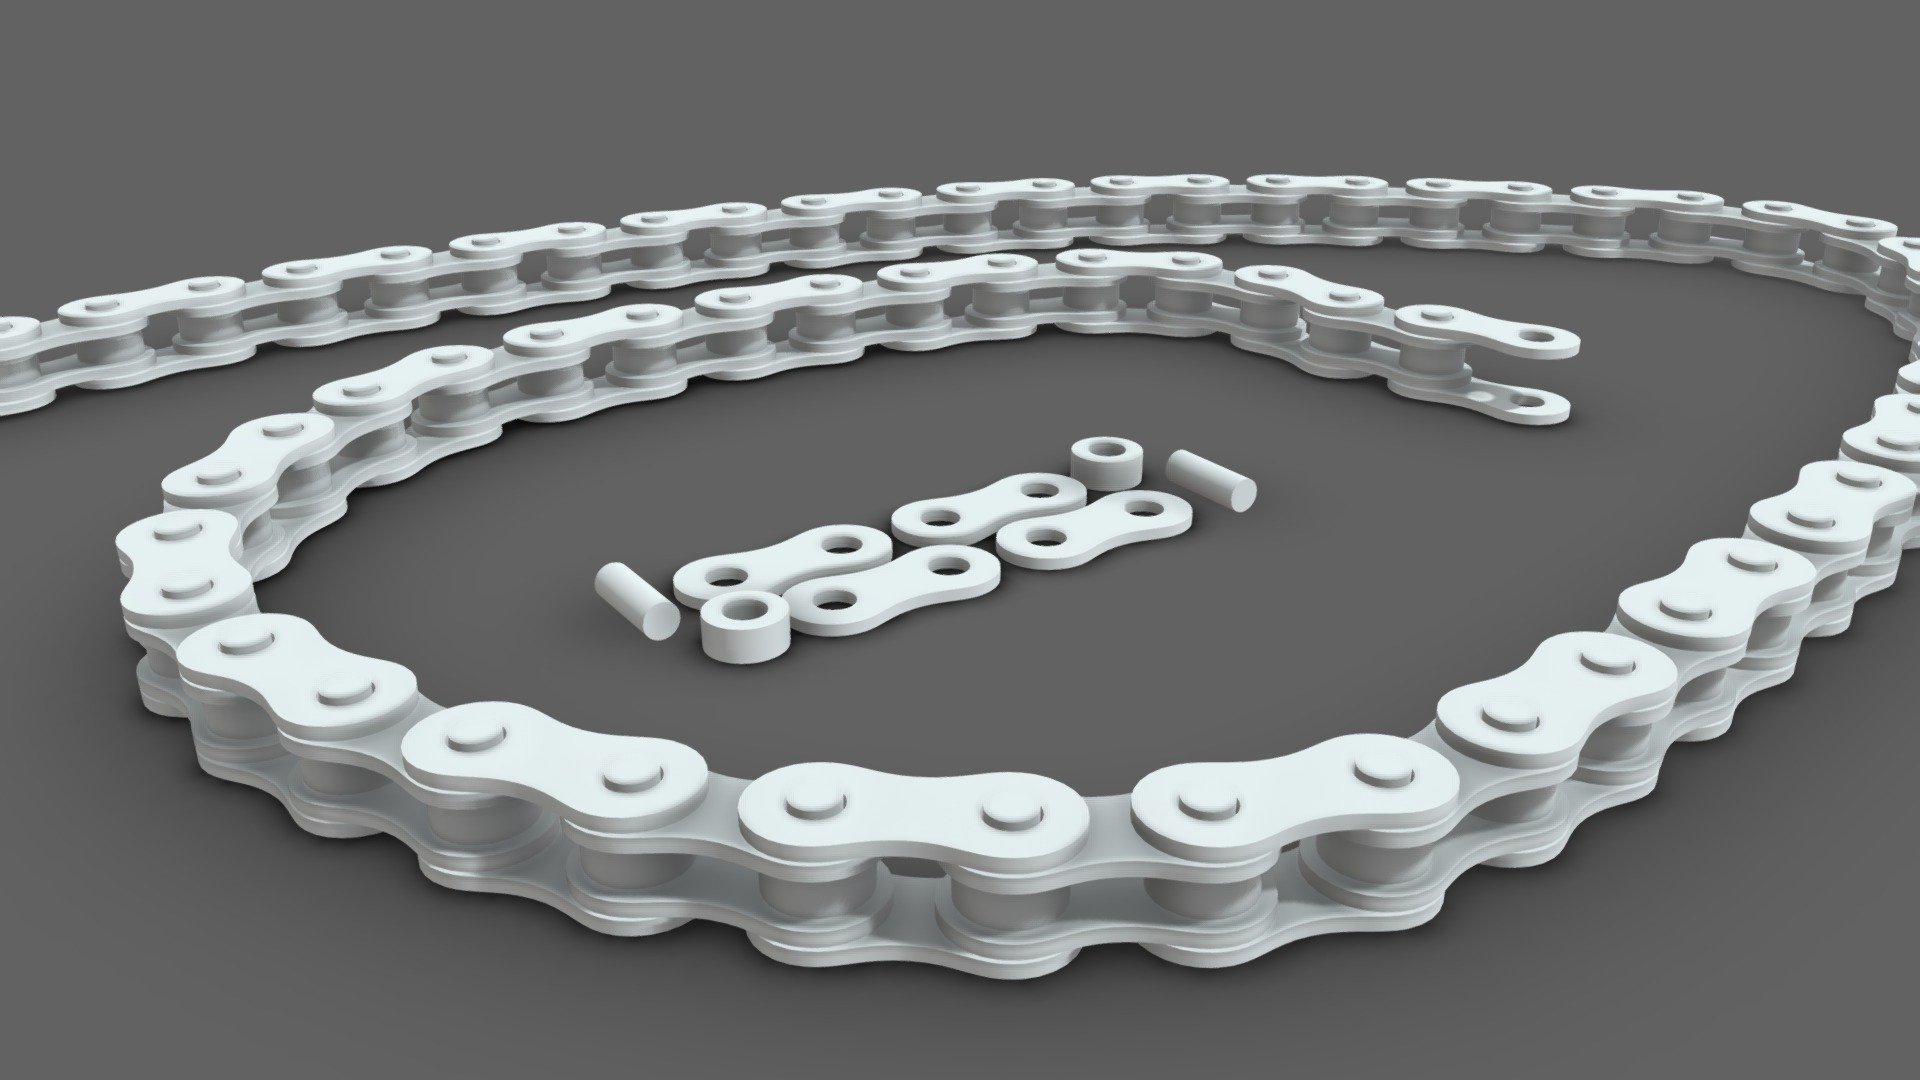 Bike chain for 3D printing - 2778D2f0c297448DbfD4eb1fec884fDb